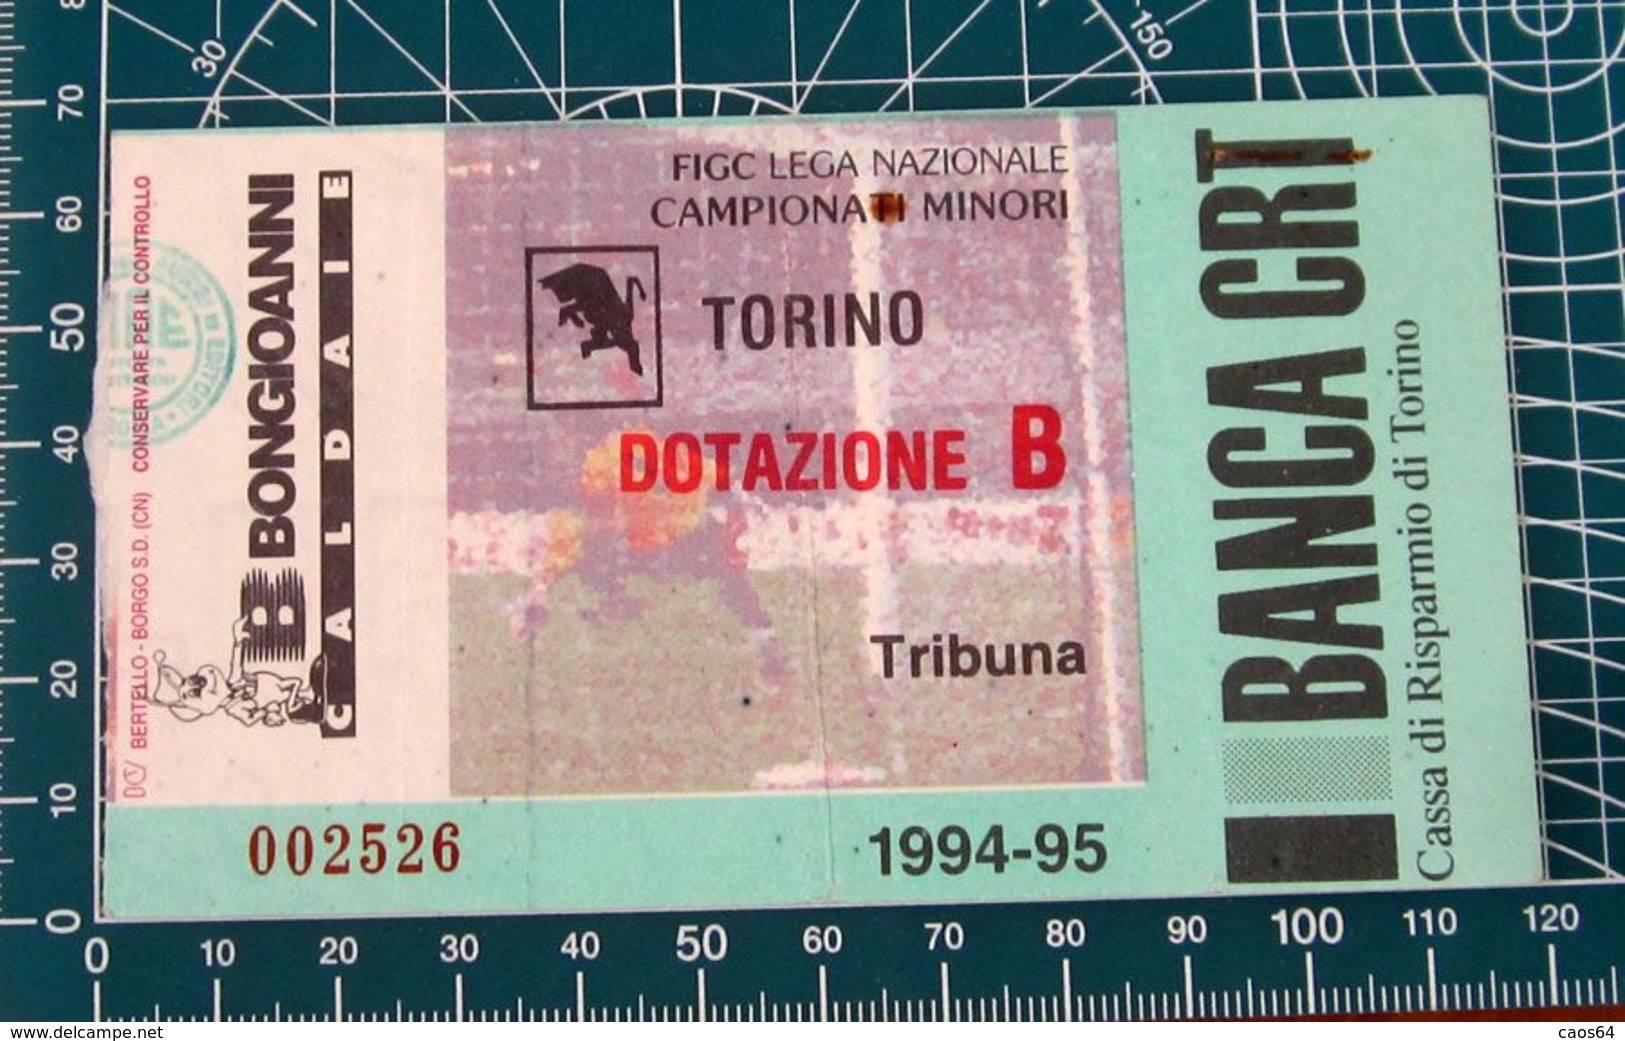 Calcio Ticket BIGLIETTO TORINO - DOTAZIONE B 1994-95 - Biglietti D'ingresso